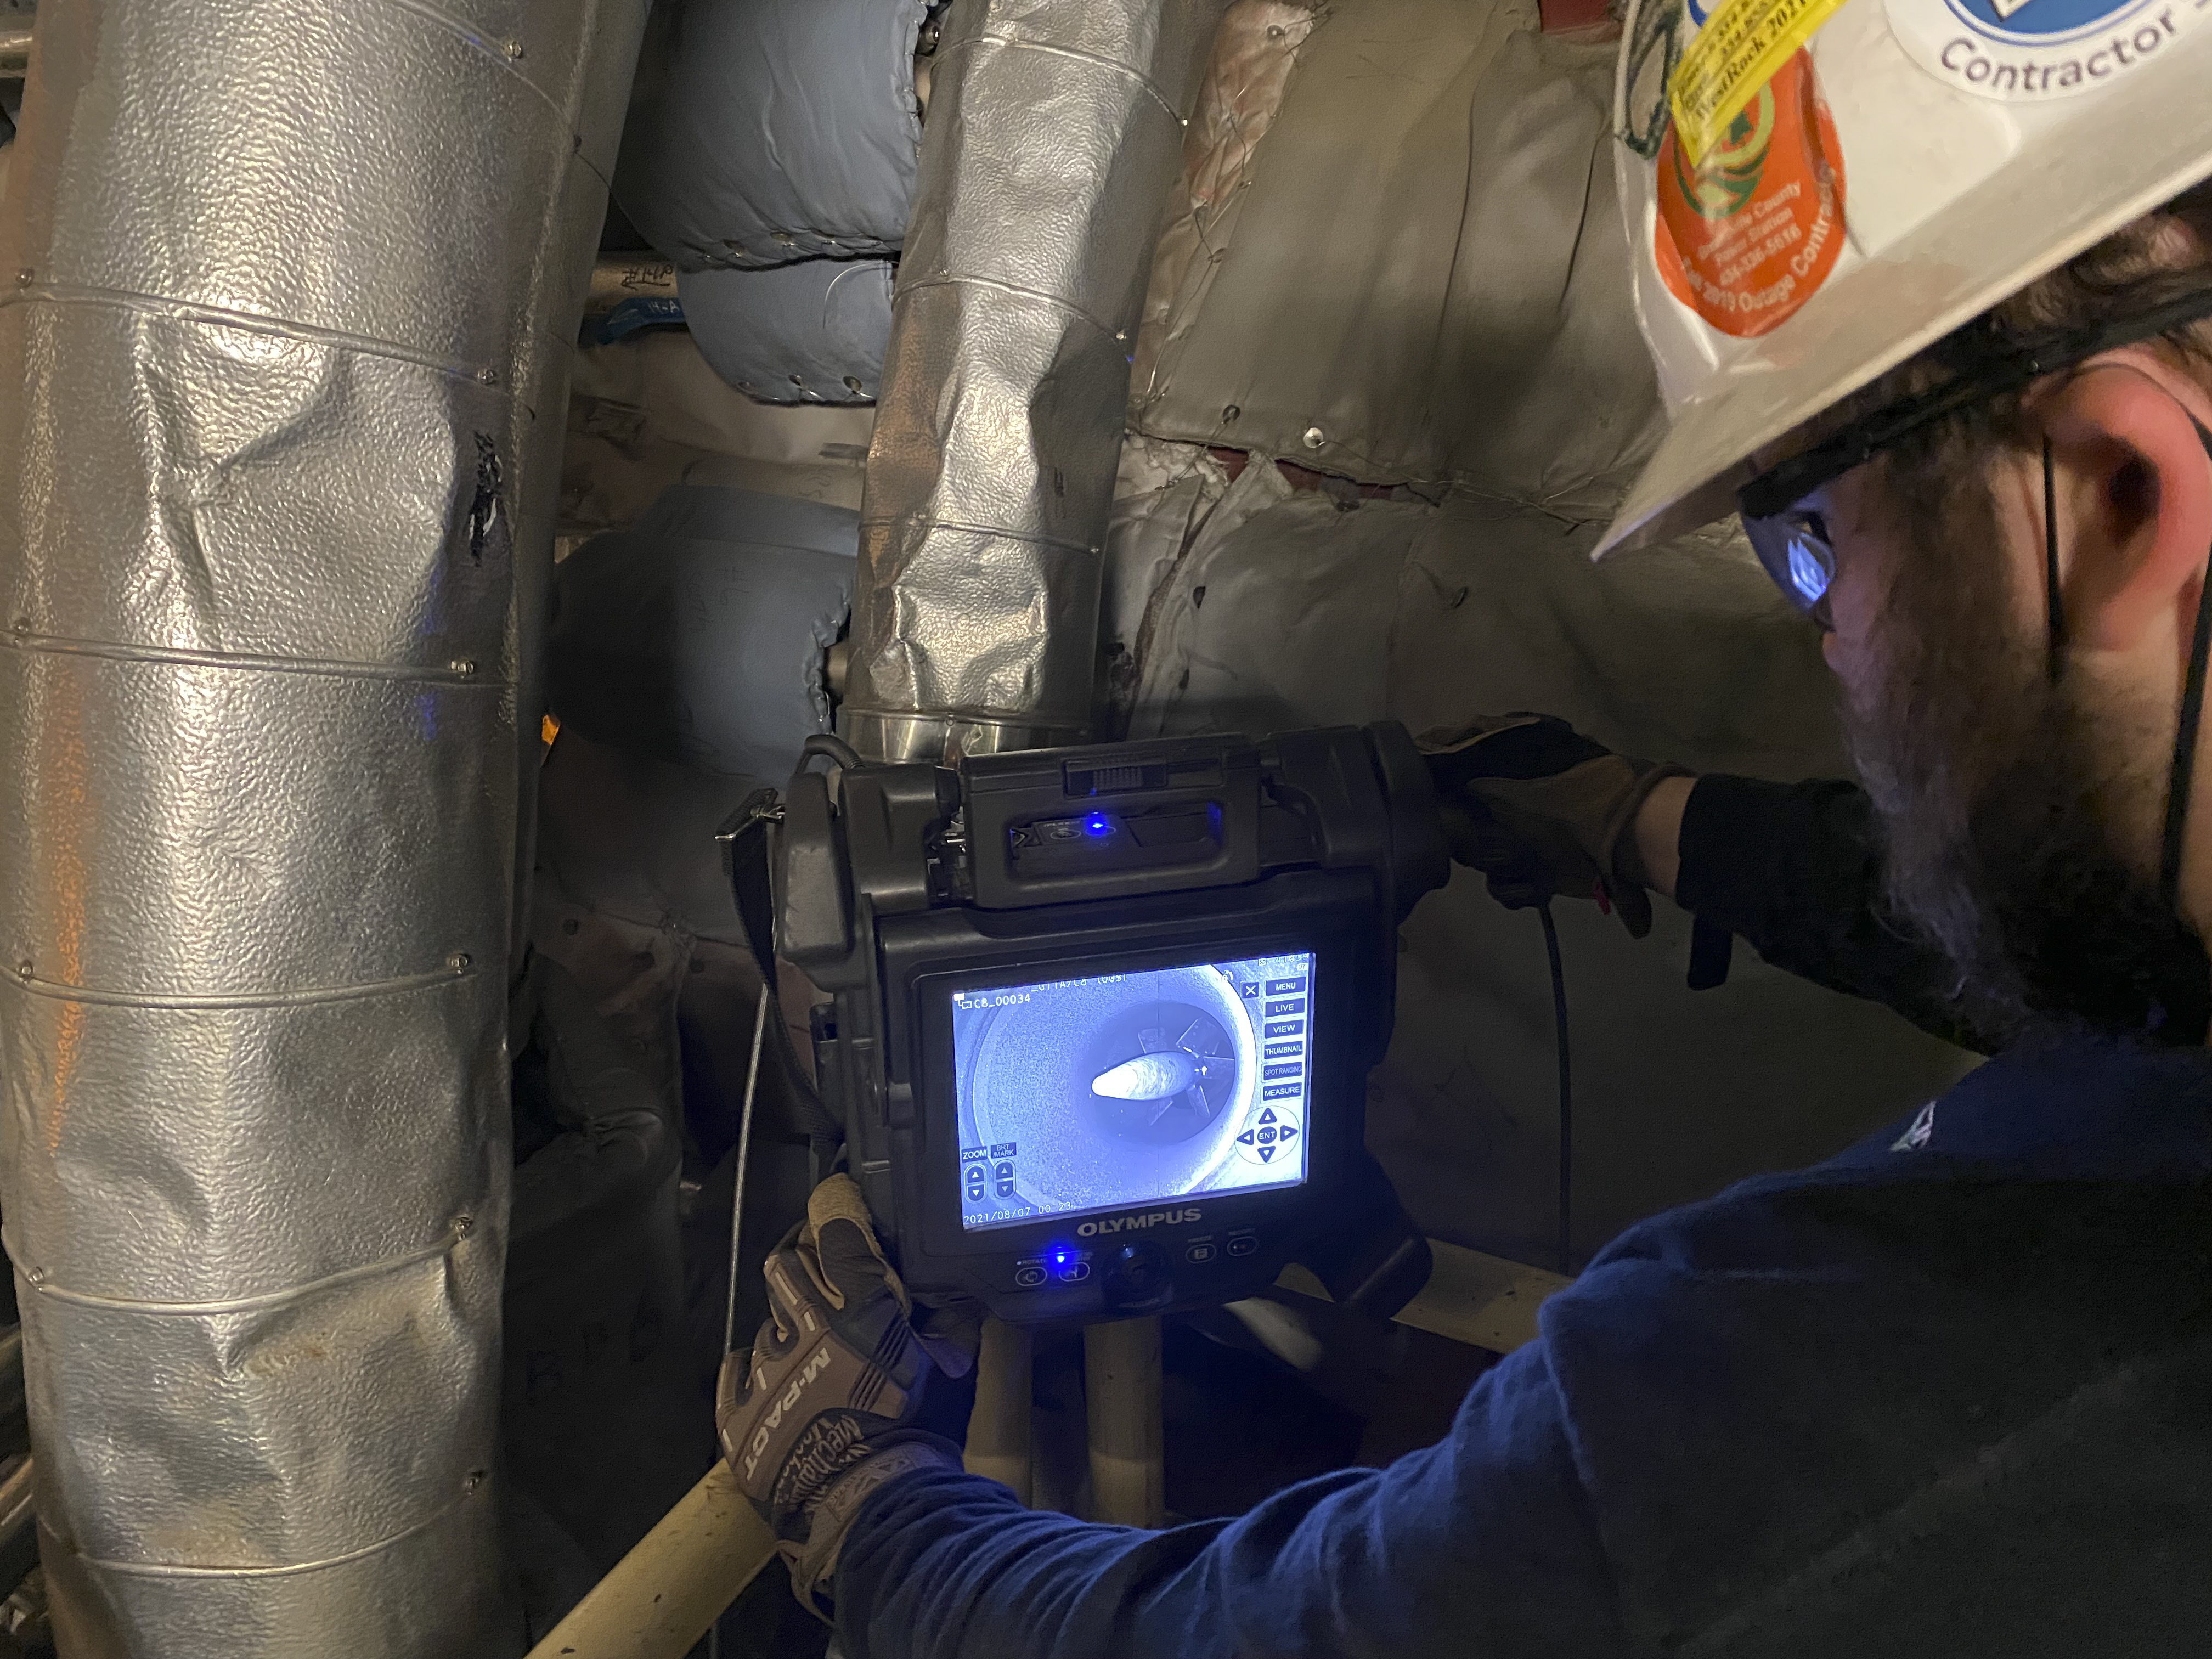 Inspector de Veracity Technology Solutions usando el videoscopio IPLEX NX en una inspección videoscópica de una turbina de gas en una central de energía eléctrica.